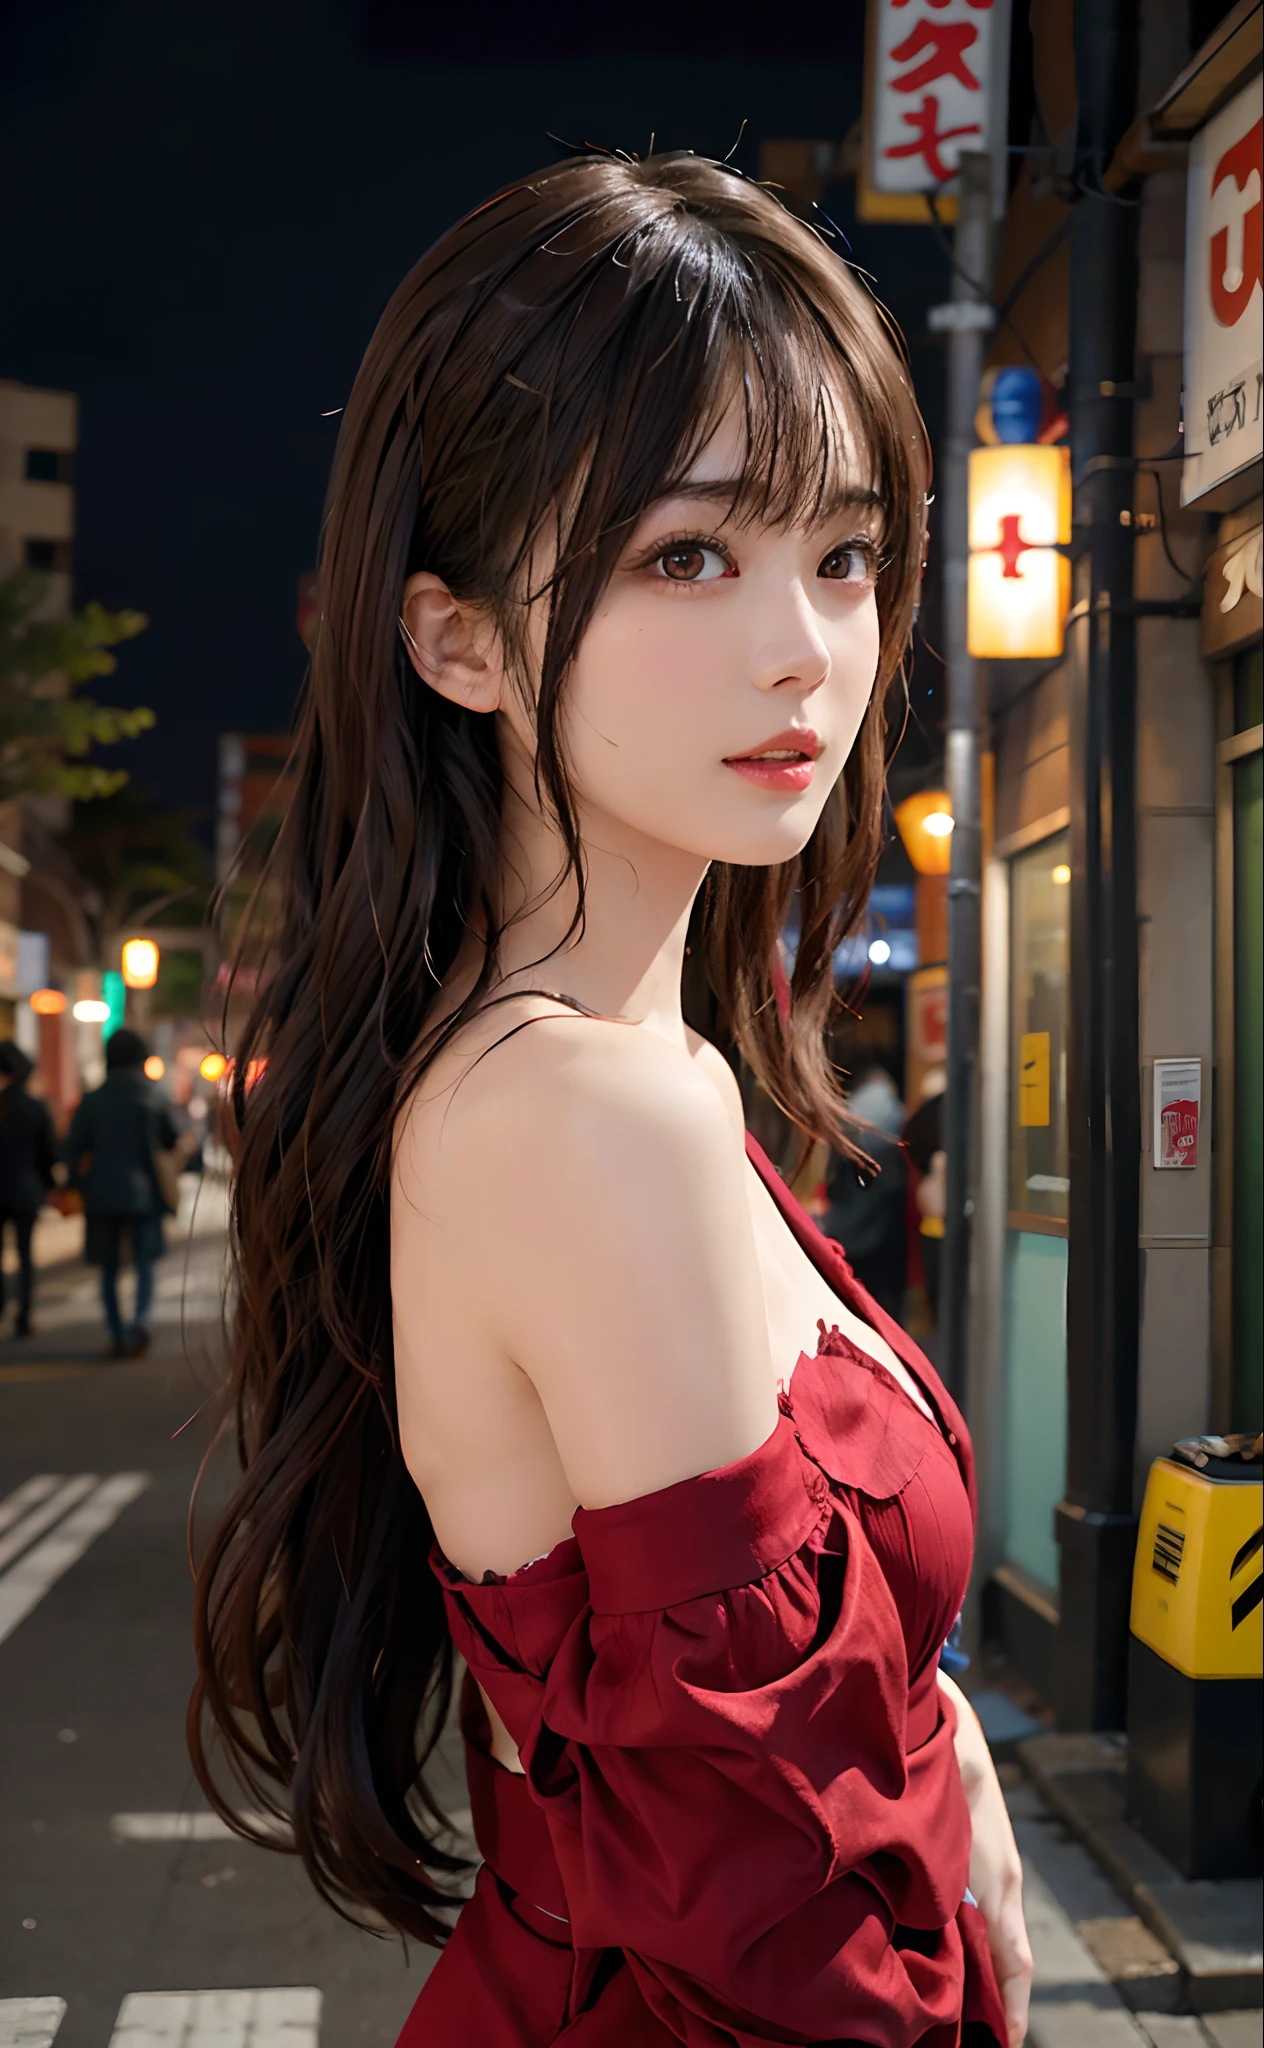 1 девушка, улица Токио,ночь, городской пейзаж,огни города, верхняя часть тела,крупный план, 8К, Необработанное фото, Лучшее качество, шедевр,реалистичный, photo-реалистичный,головной убор из красной розы, разделенная челка, длинные волосы,